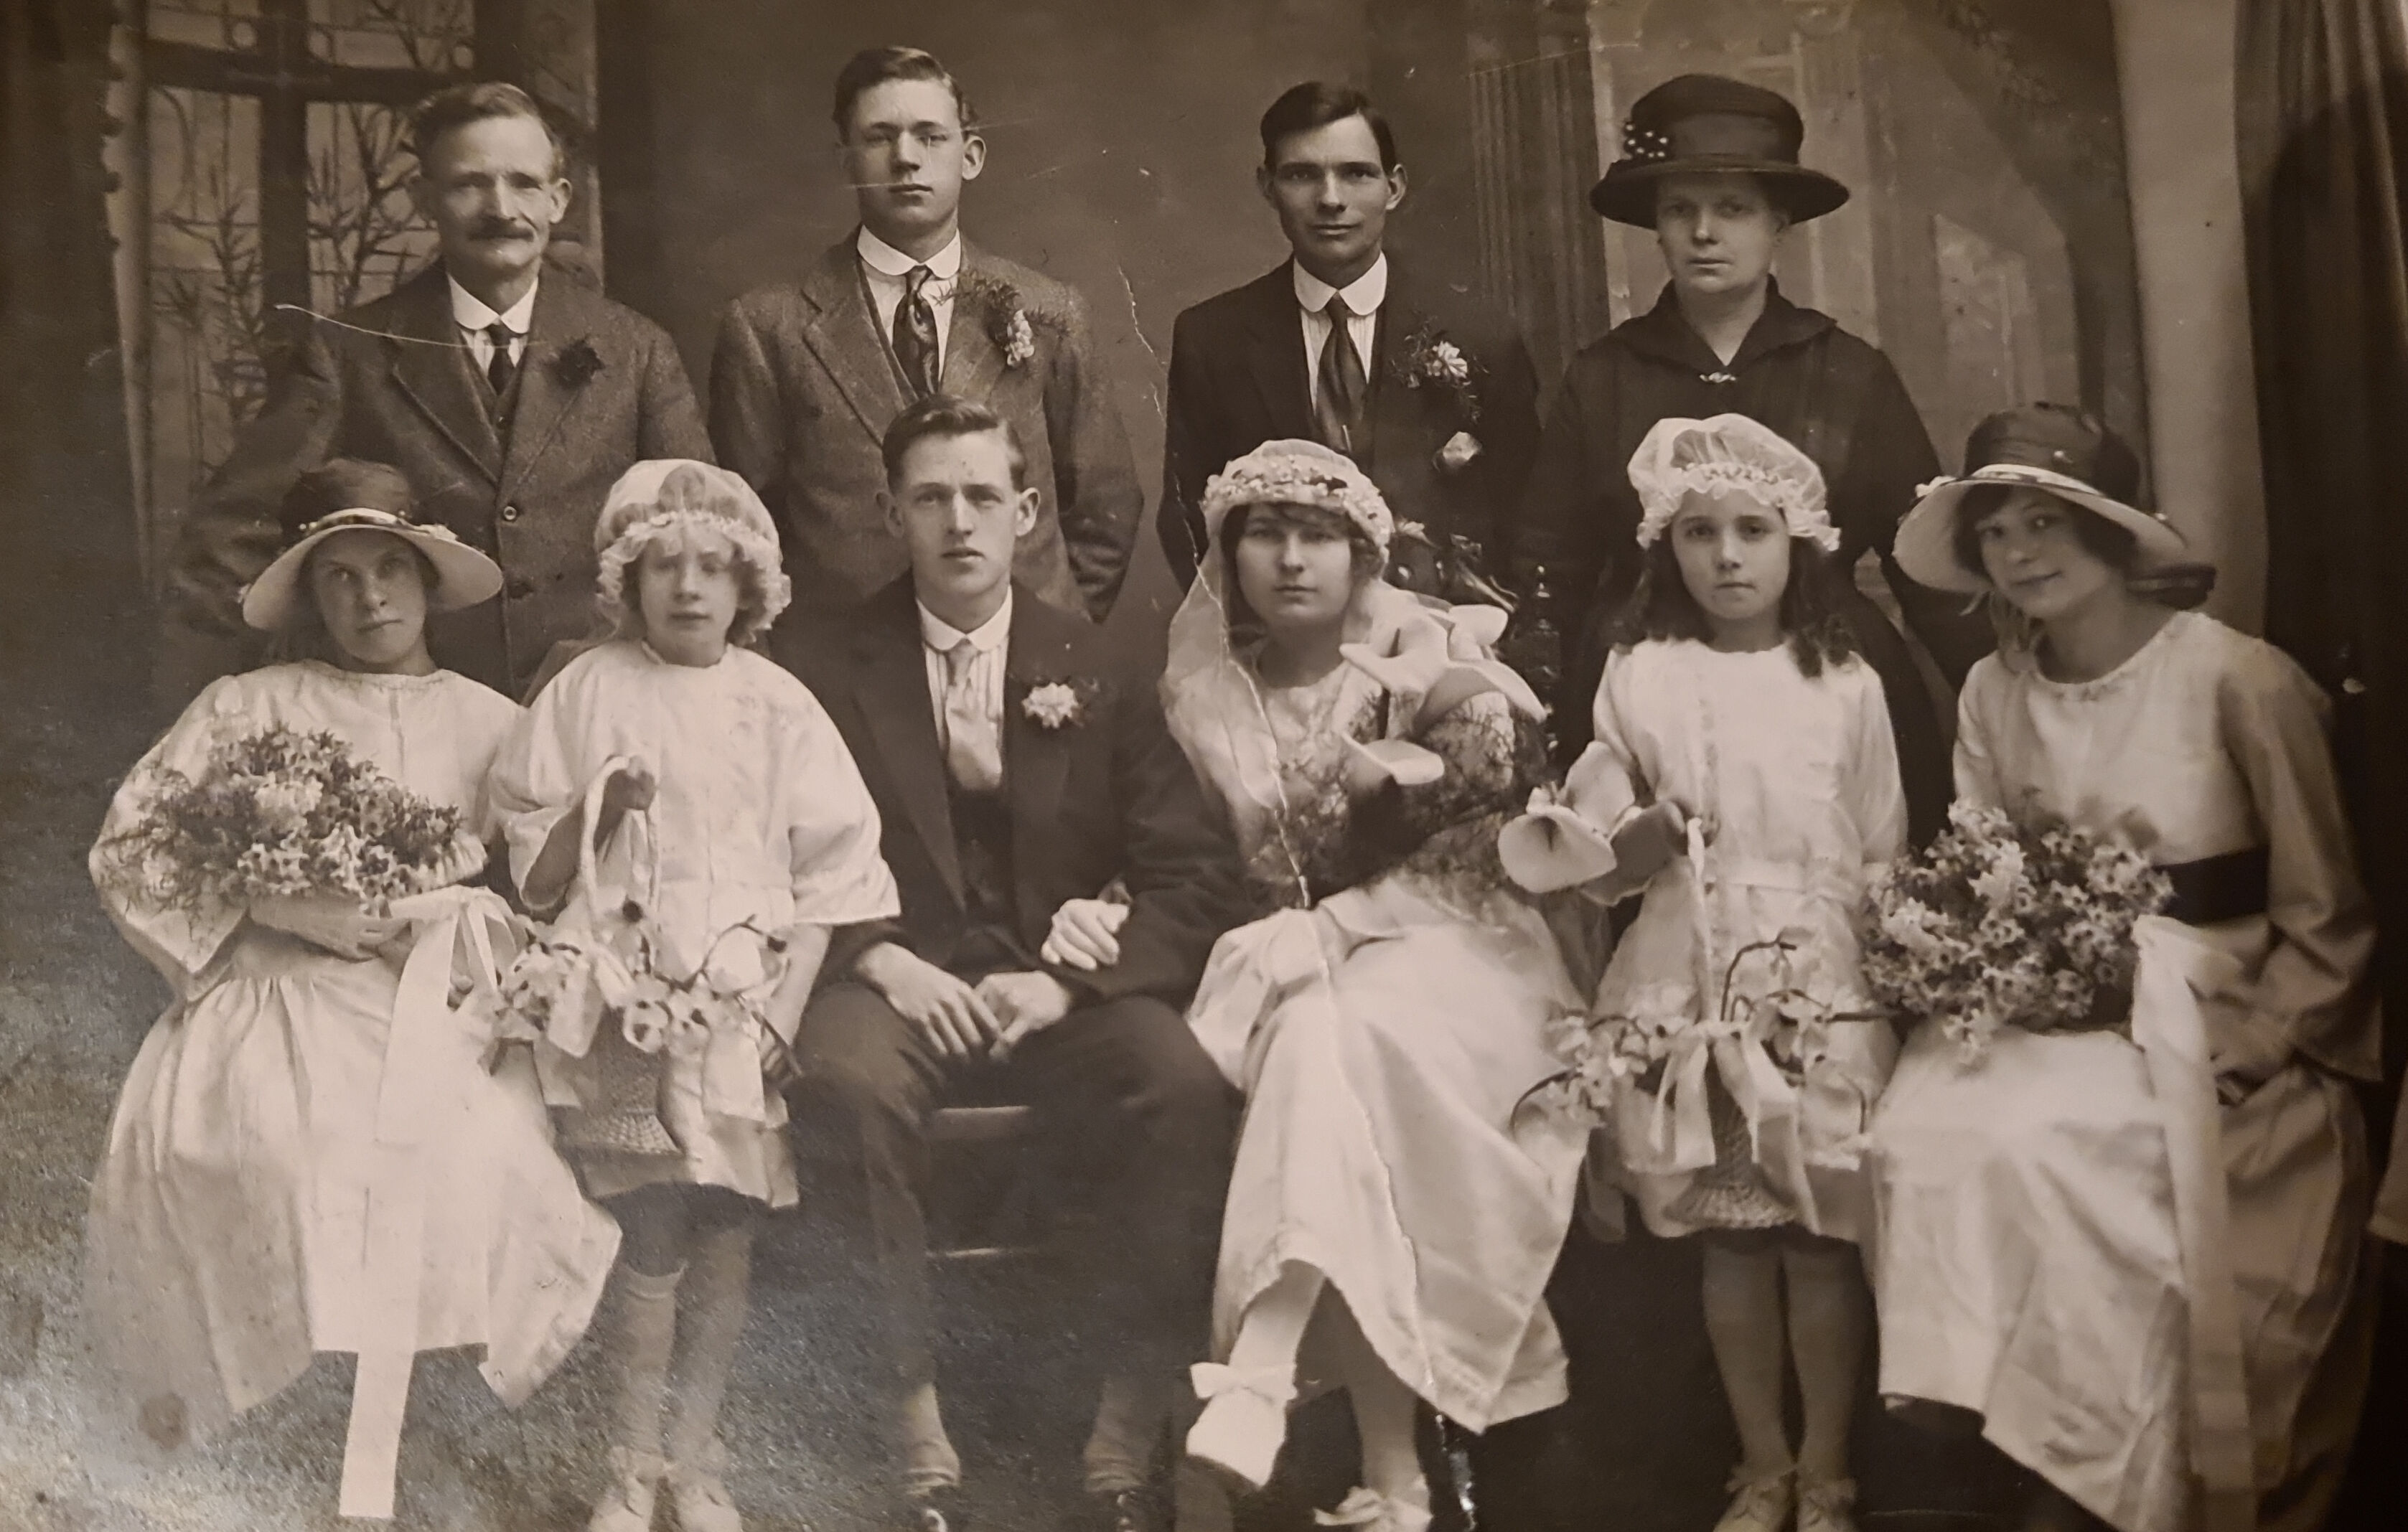 Jack Neals wedding, Swindon, Wiltshire, 15/4/1922 